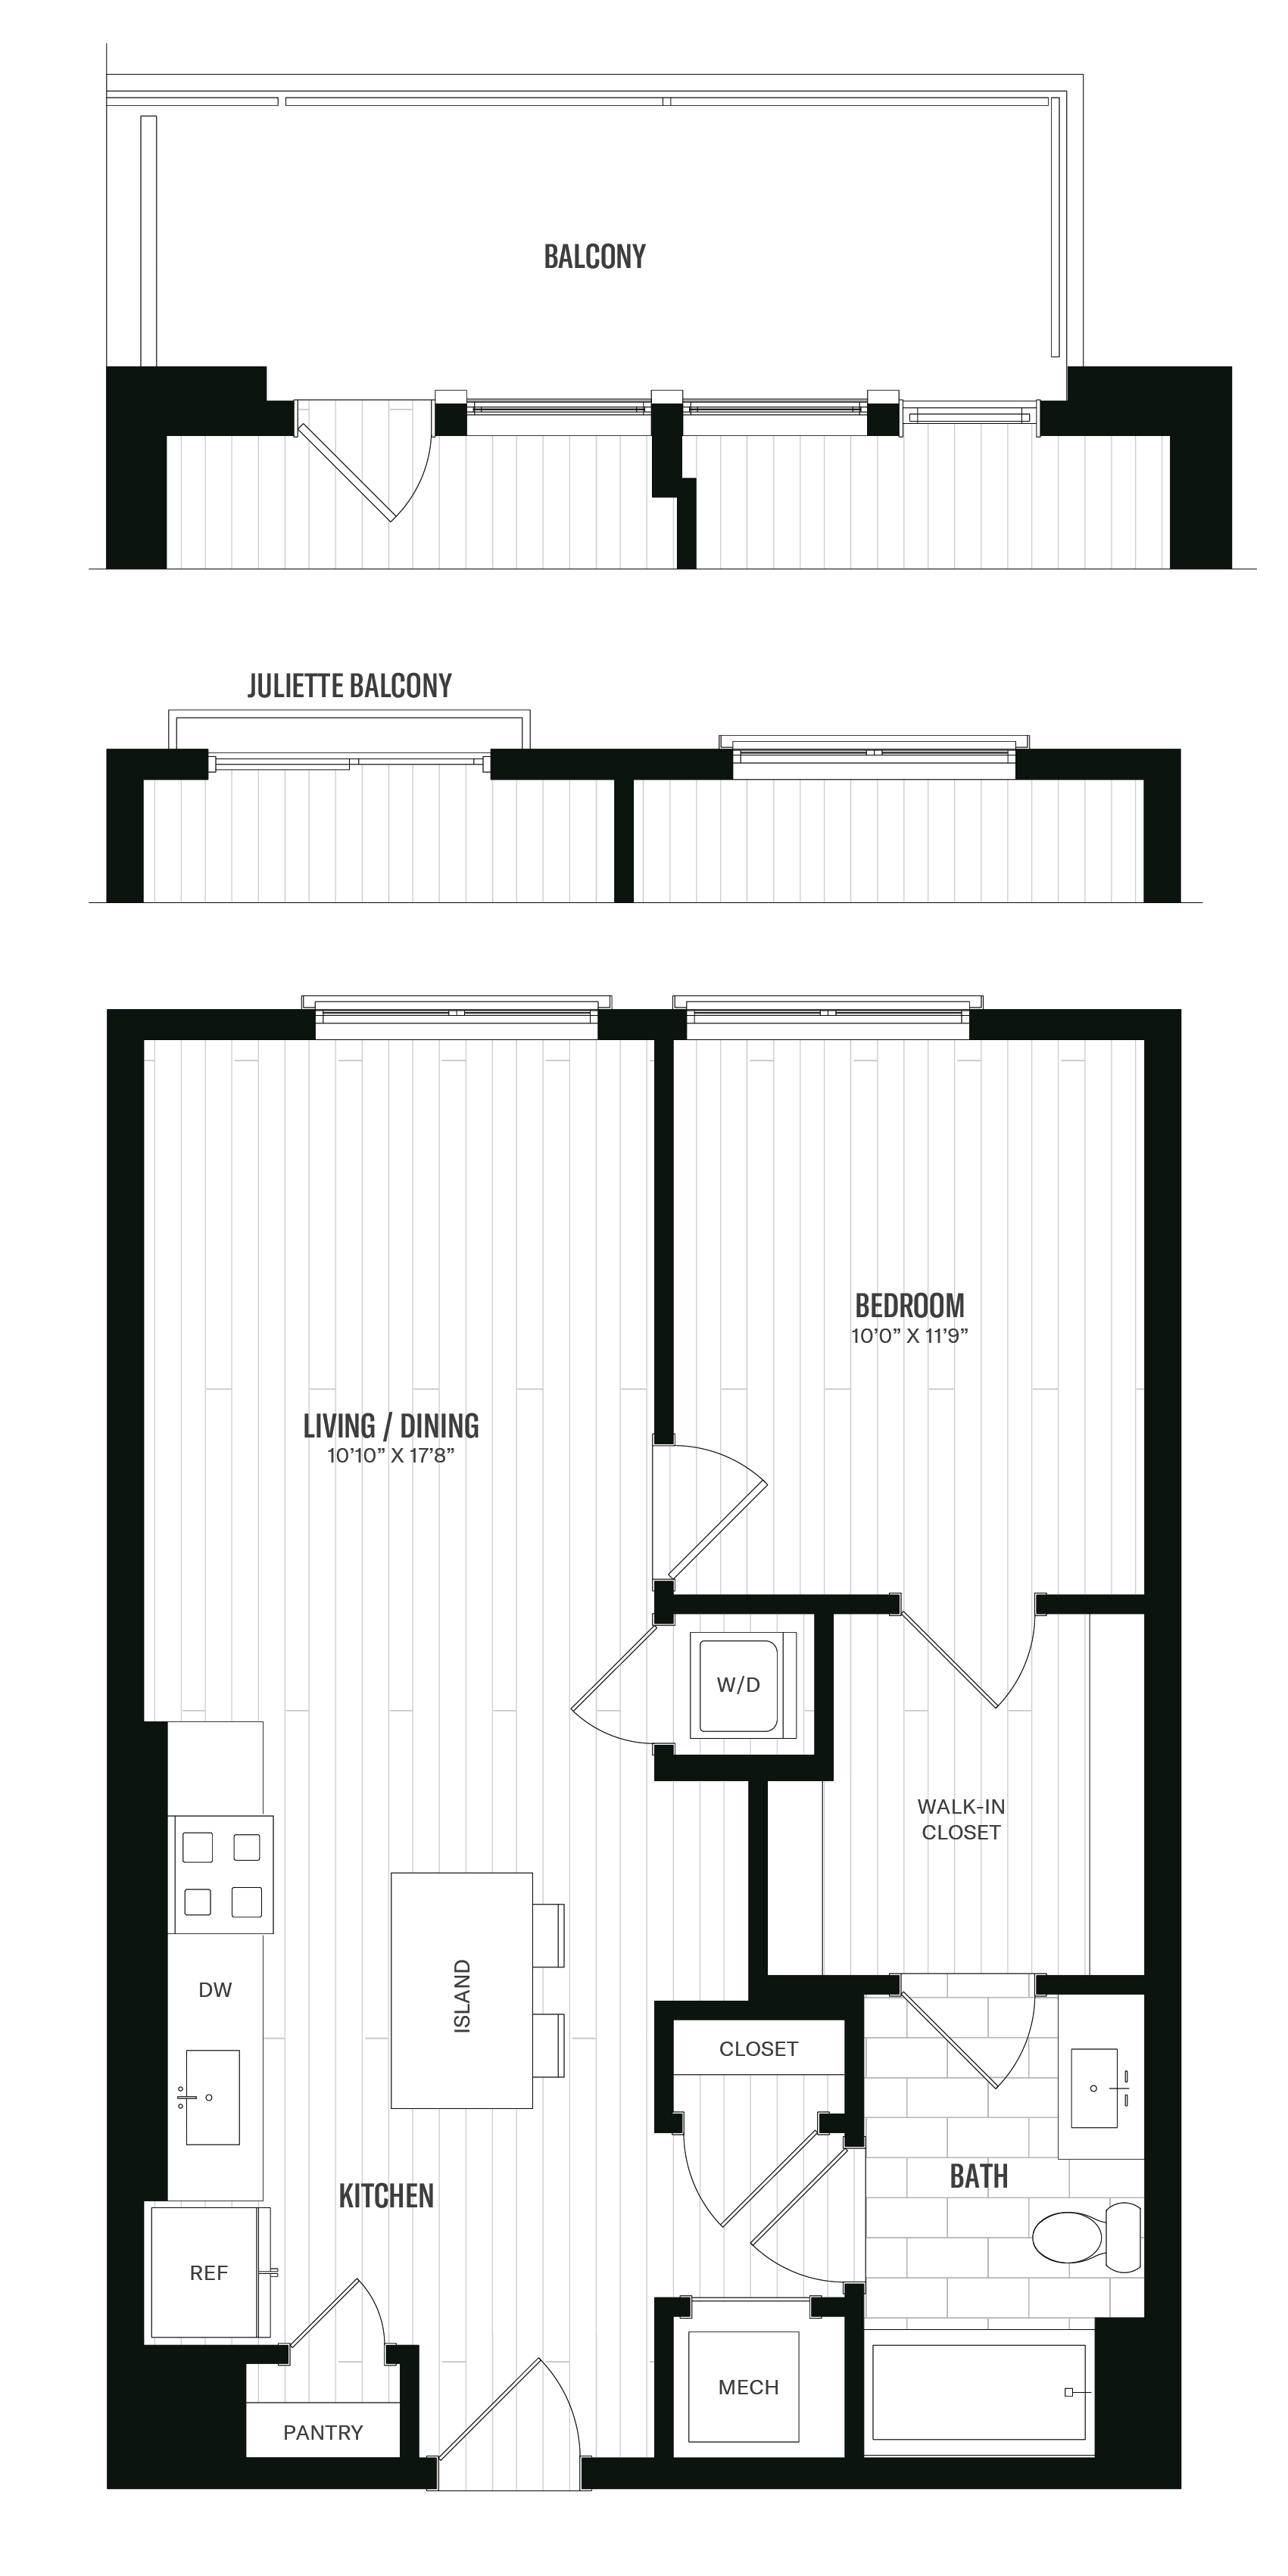 Floorplan image of unit 333